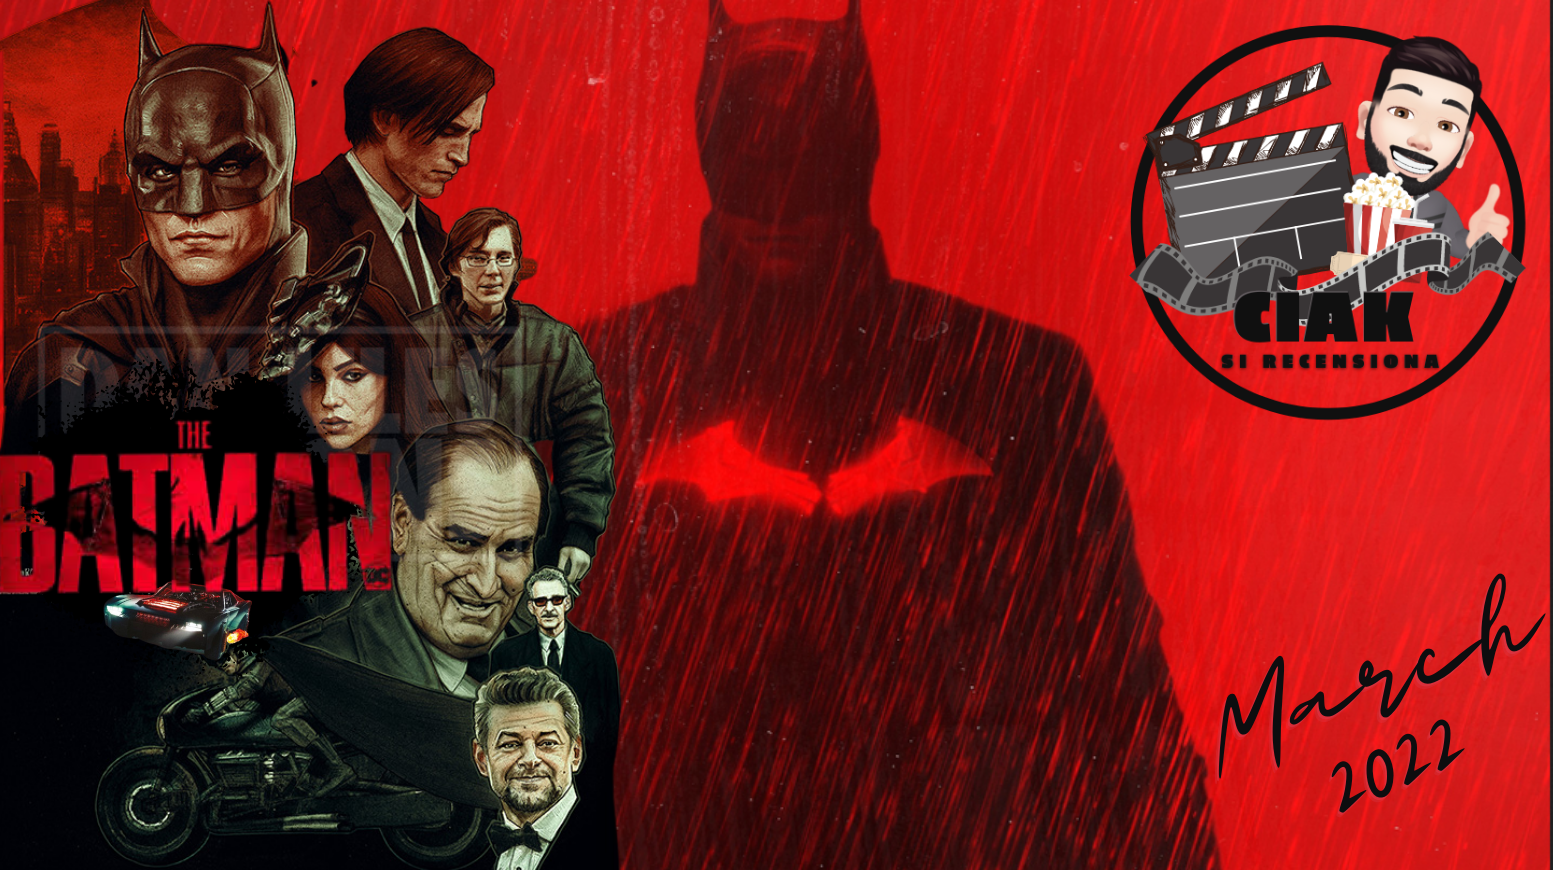 March - The Batman (2022), cosa aspettarci dopo la visione del trailer 2